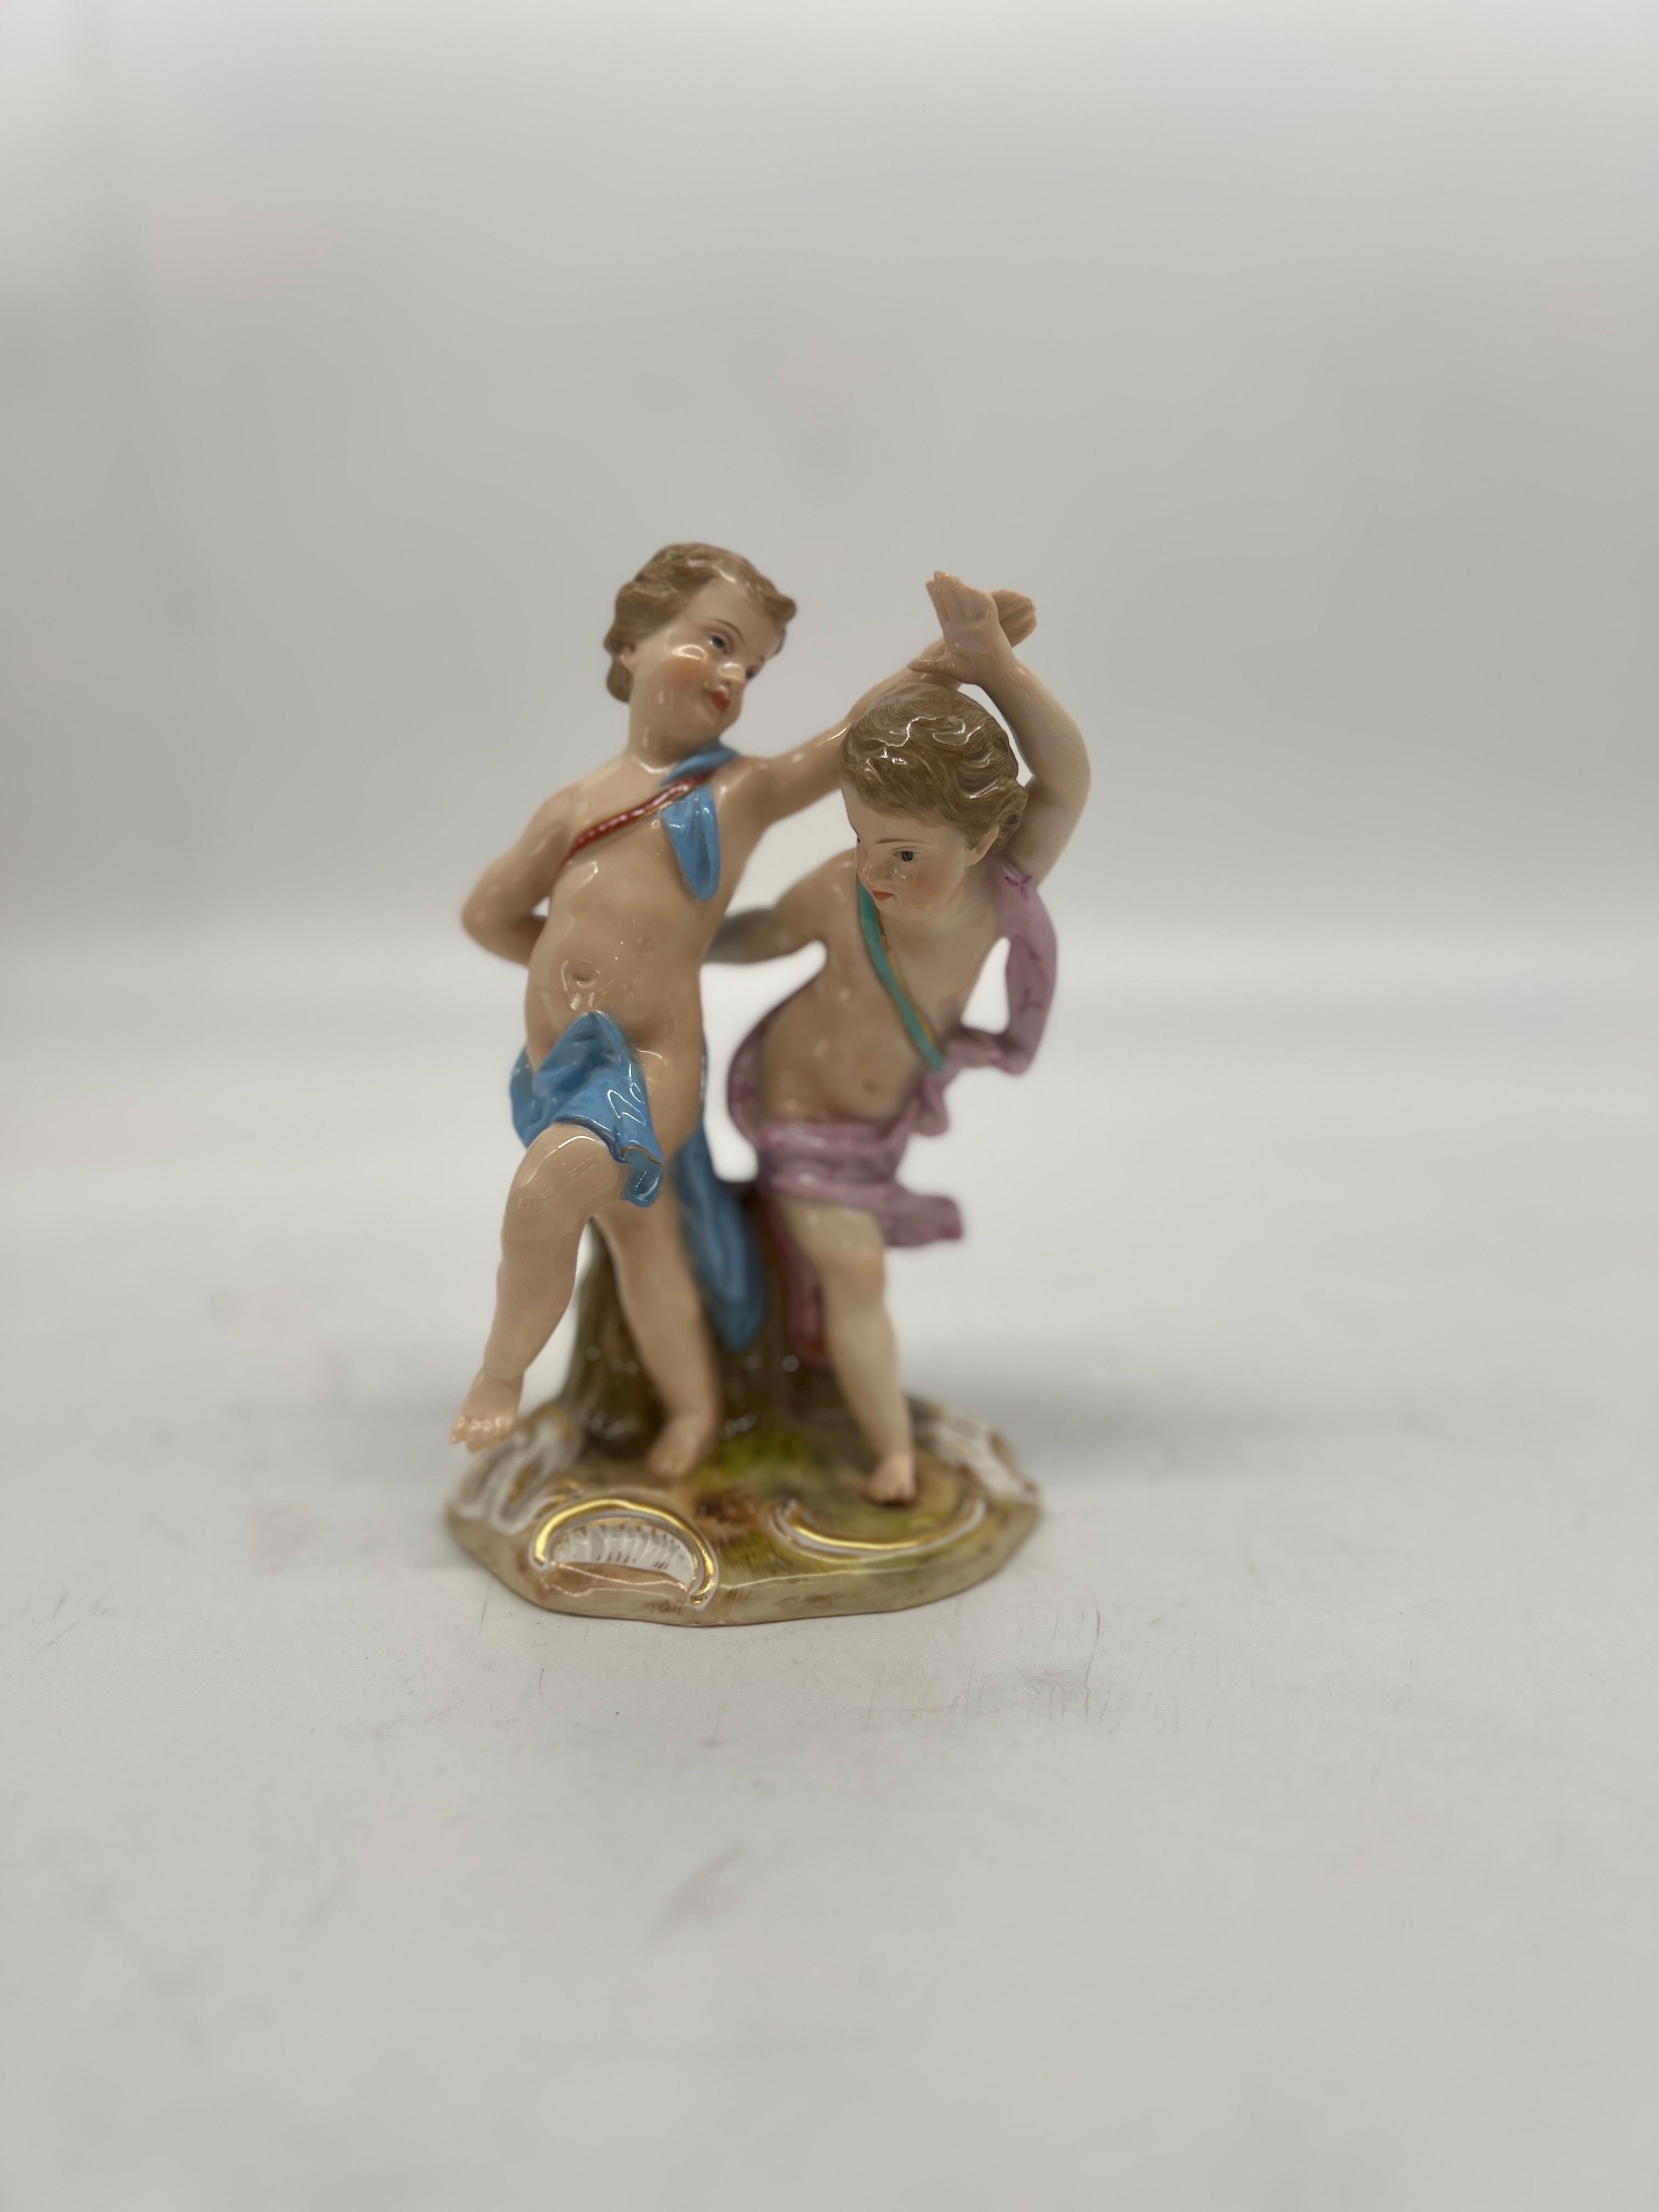 Cette ancienne figurine en porcelaine de Meissen représente deux personnages dansant et date d'environ 1815. La pièce est fabriquée en porcelaine de haute qualité et présente des détails complexes ainsi qu'une belle finition antique. Il s'agit de la